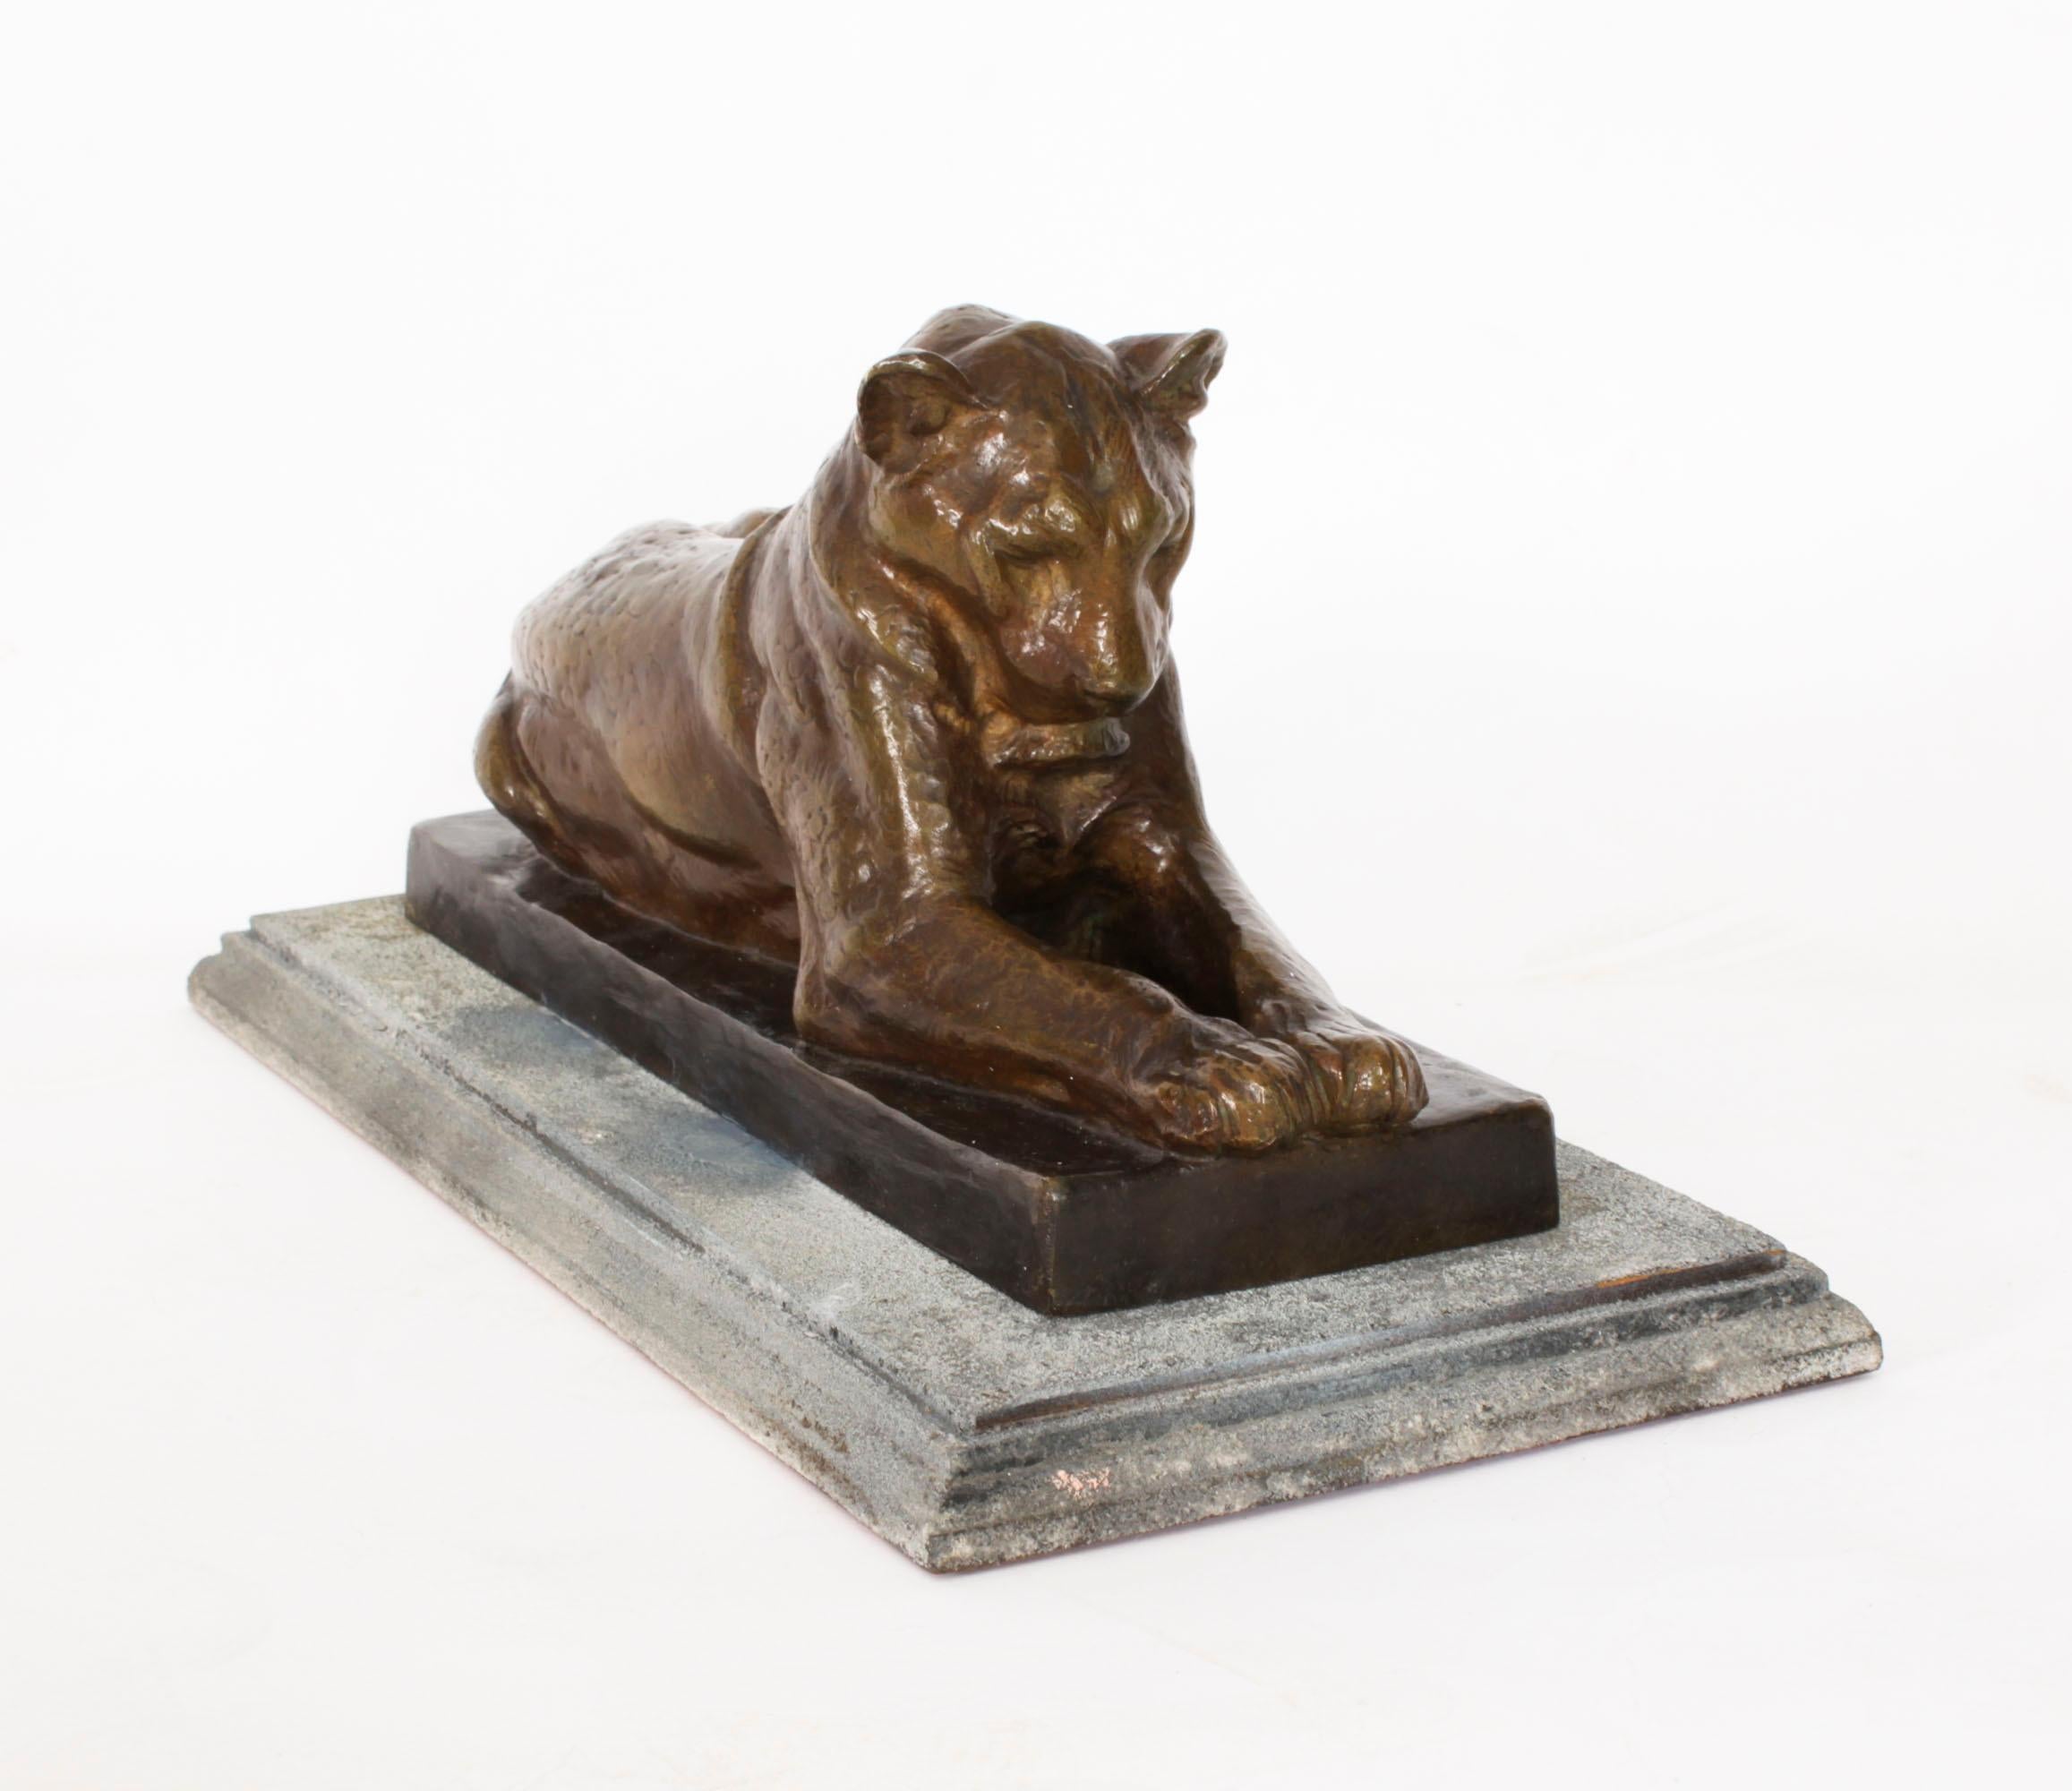 Es handelt sich um eine schöne antike Bronzeskulptur einer Löwin des bekannten französischen Bildhauers Louis Riche (1877 - 1947) aus der Zeit um 1910.
 
Die Skulptur zeigt eine liegende Löwin auf einem abgestuften rechteckigen Sockel, signiert mit